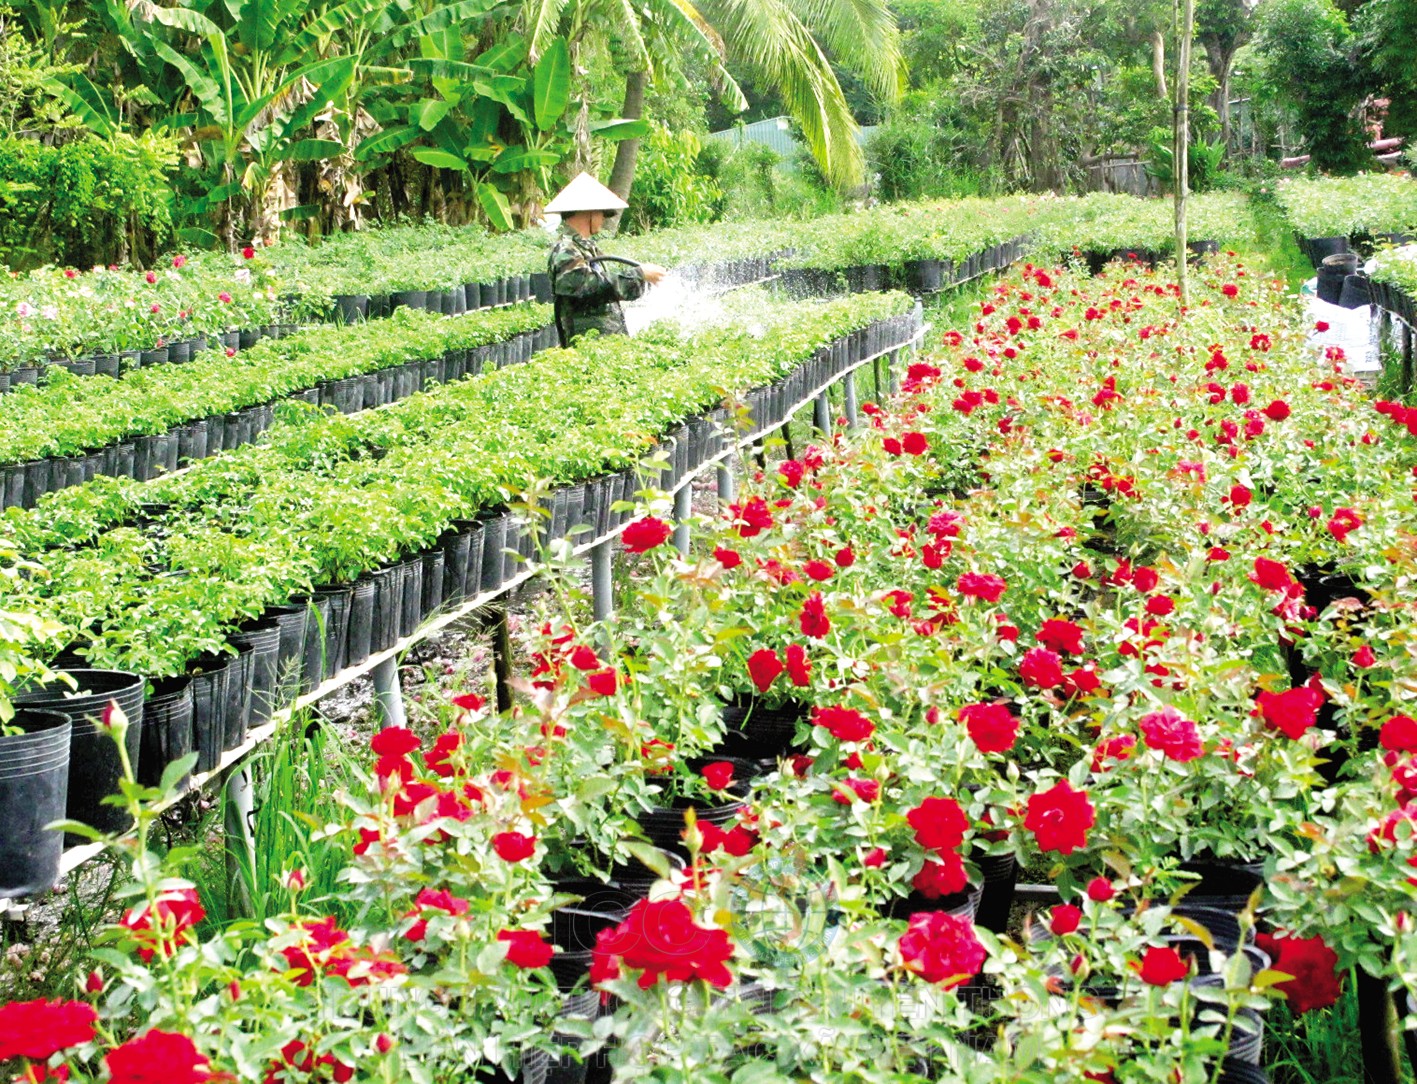 Nông dân trồng hoa ở Làng hoa Sa Đéc chăm sóc hoa phục vụ thị trường Tết.